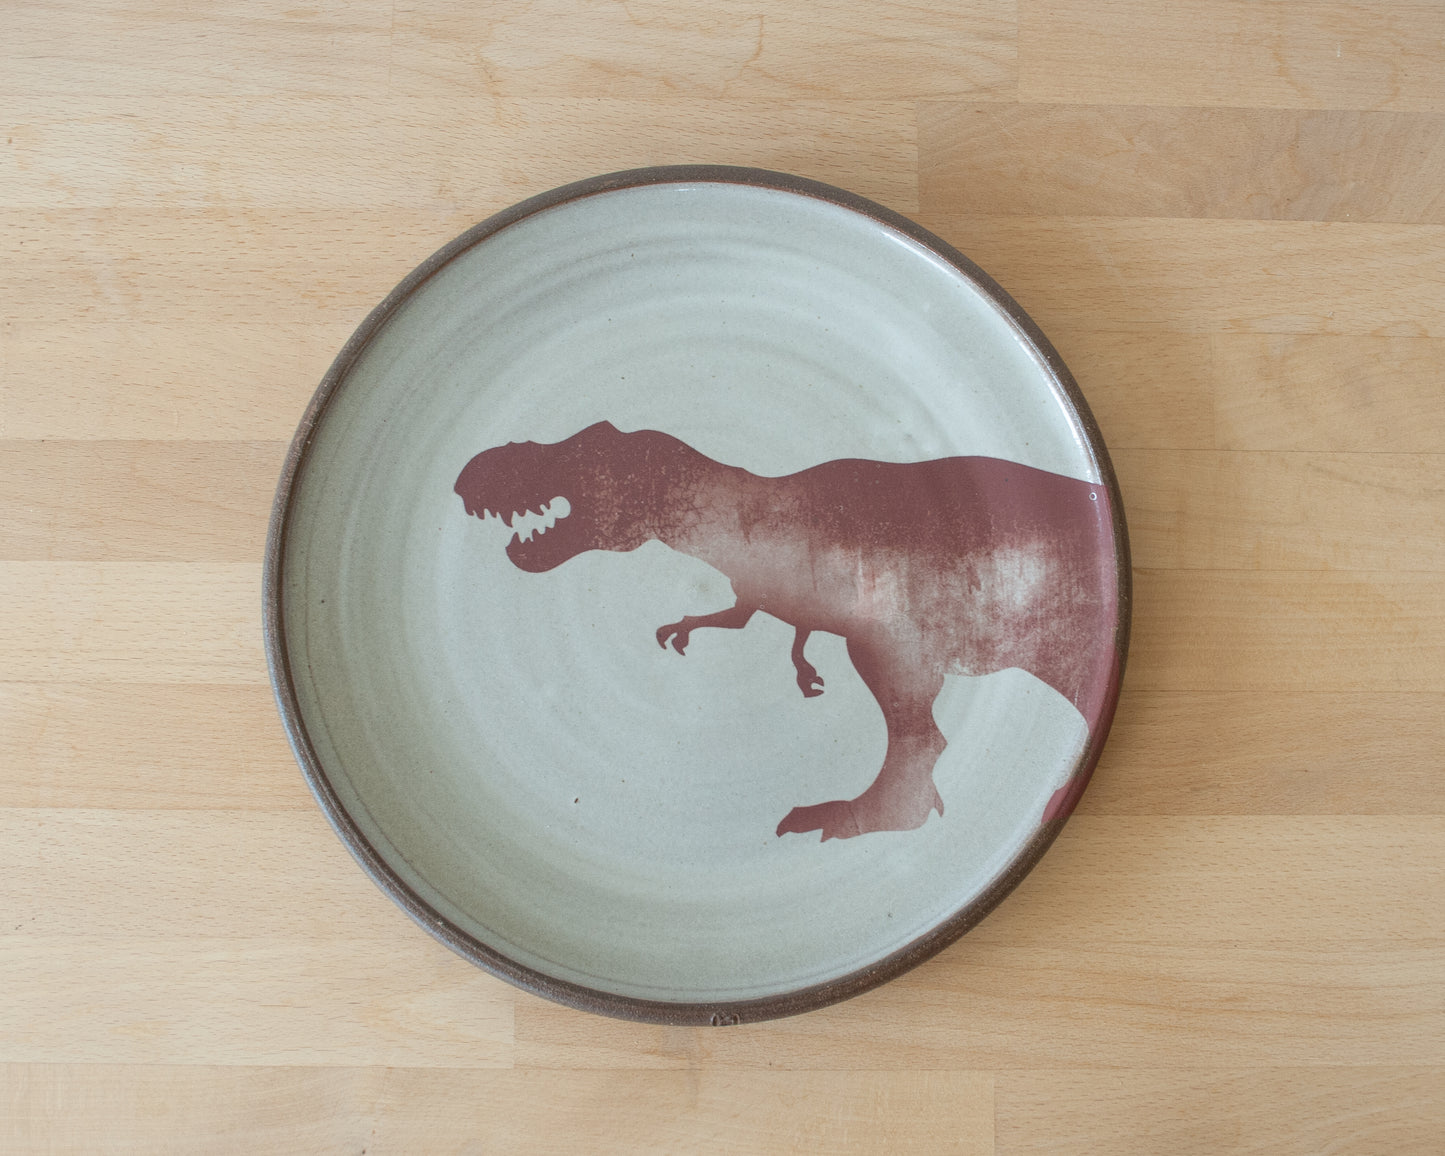 T-Rex Dinner Plate - white